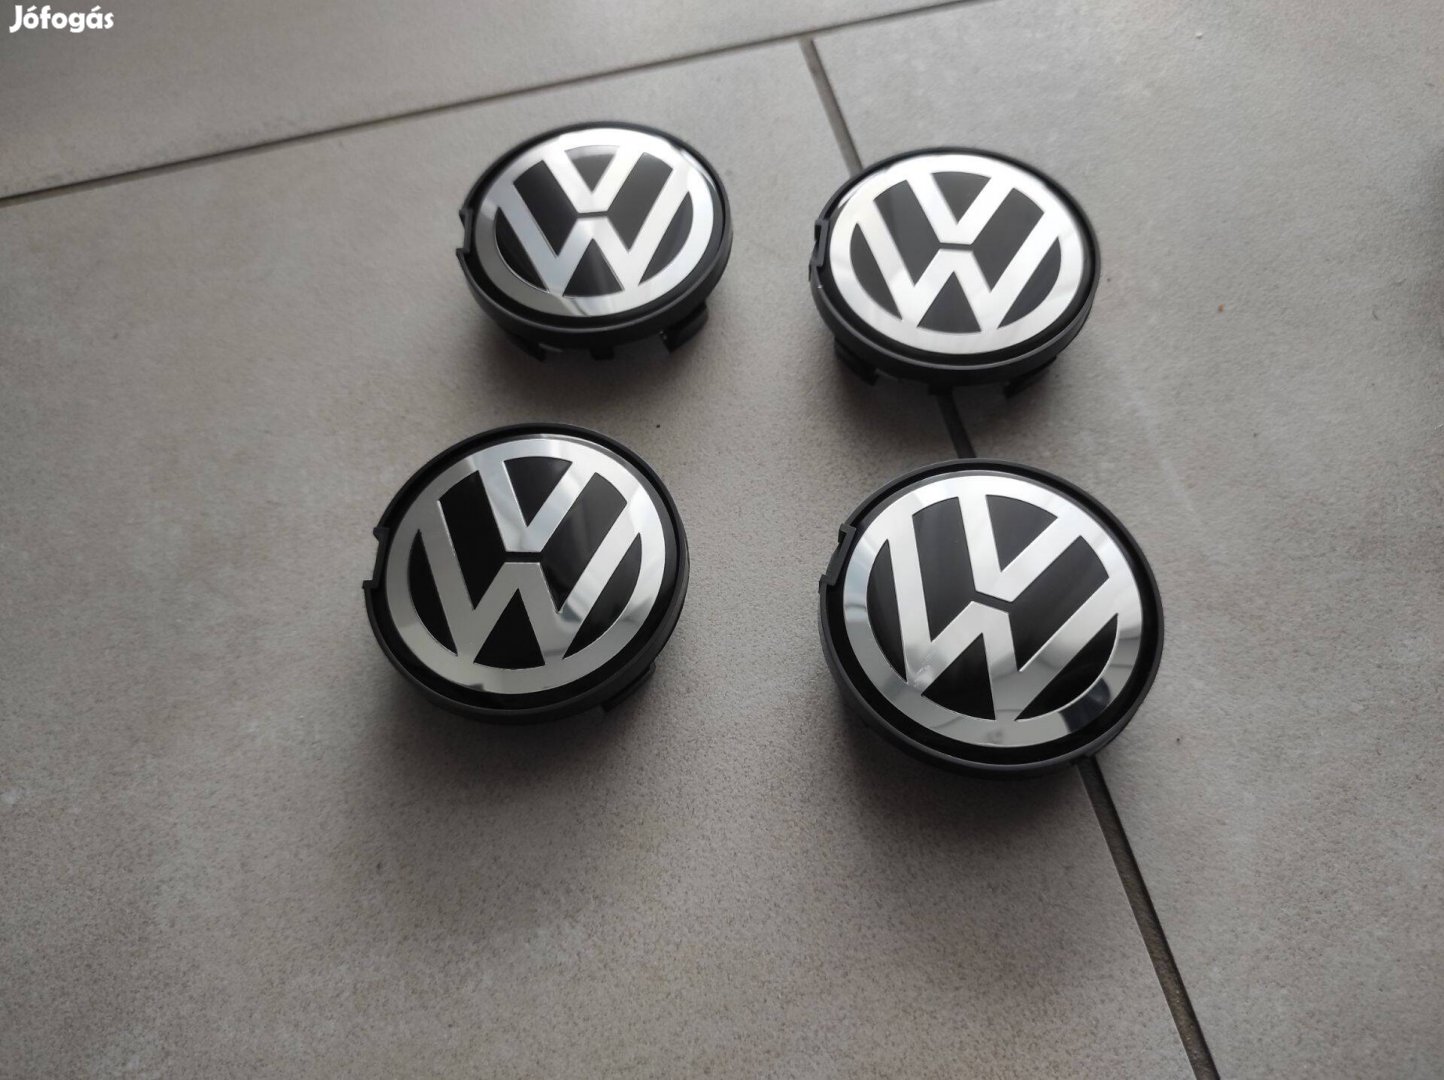 VW Volkswagen alufelni felni kupak közép 7D0601171 63 mm